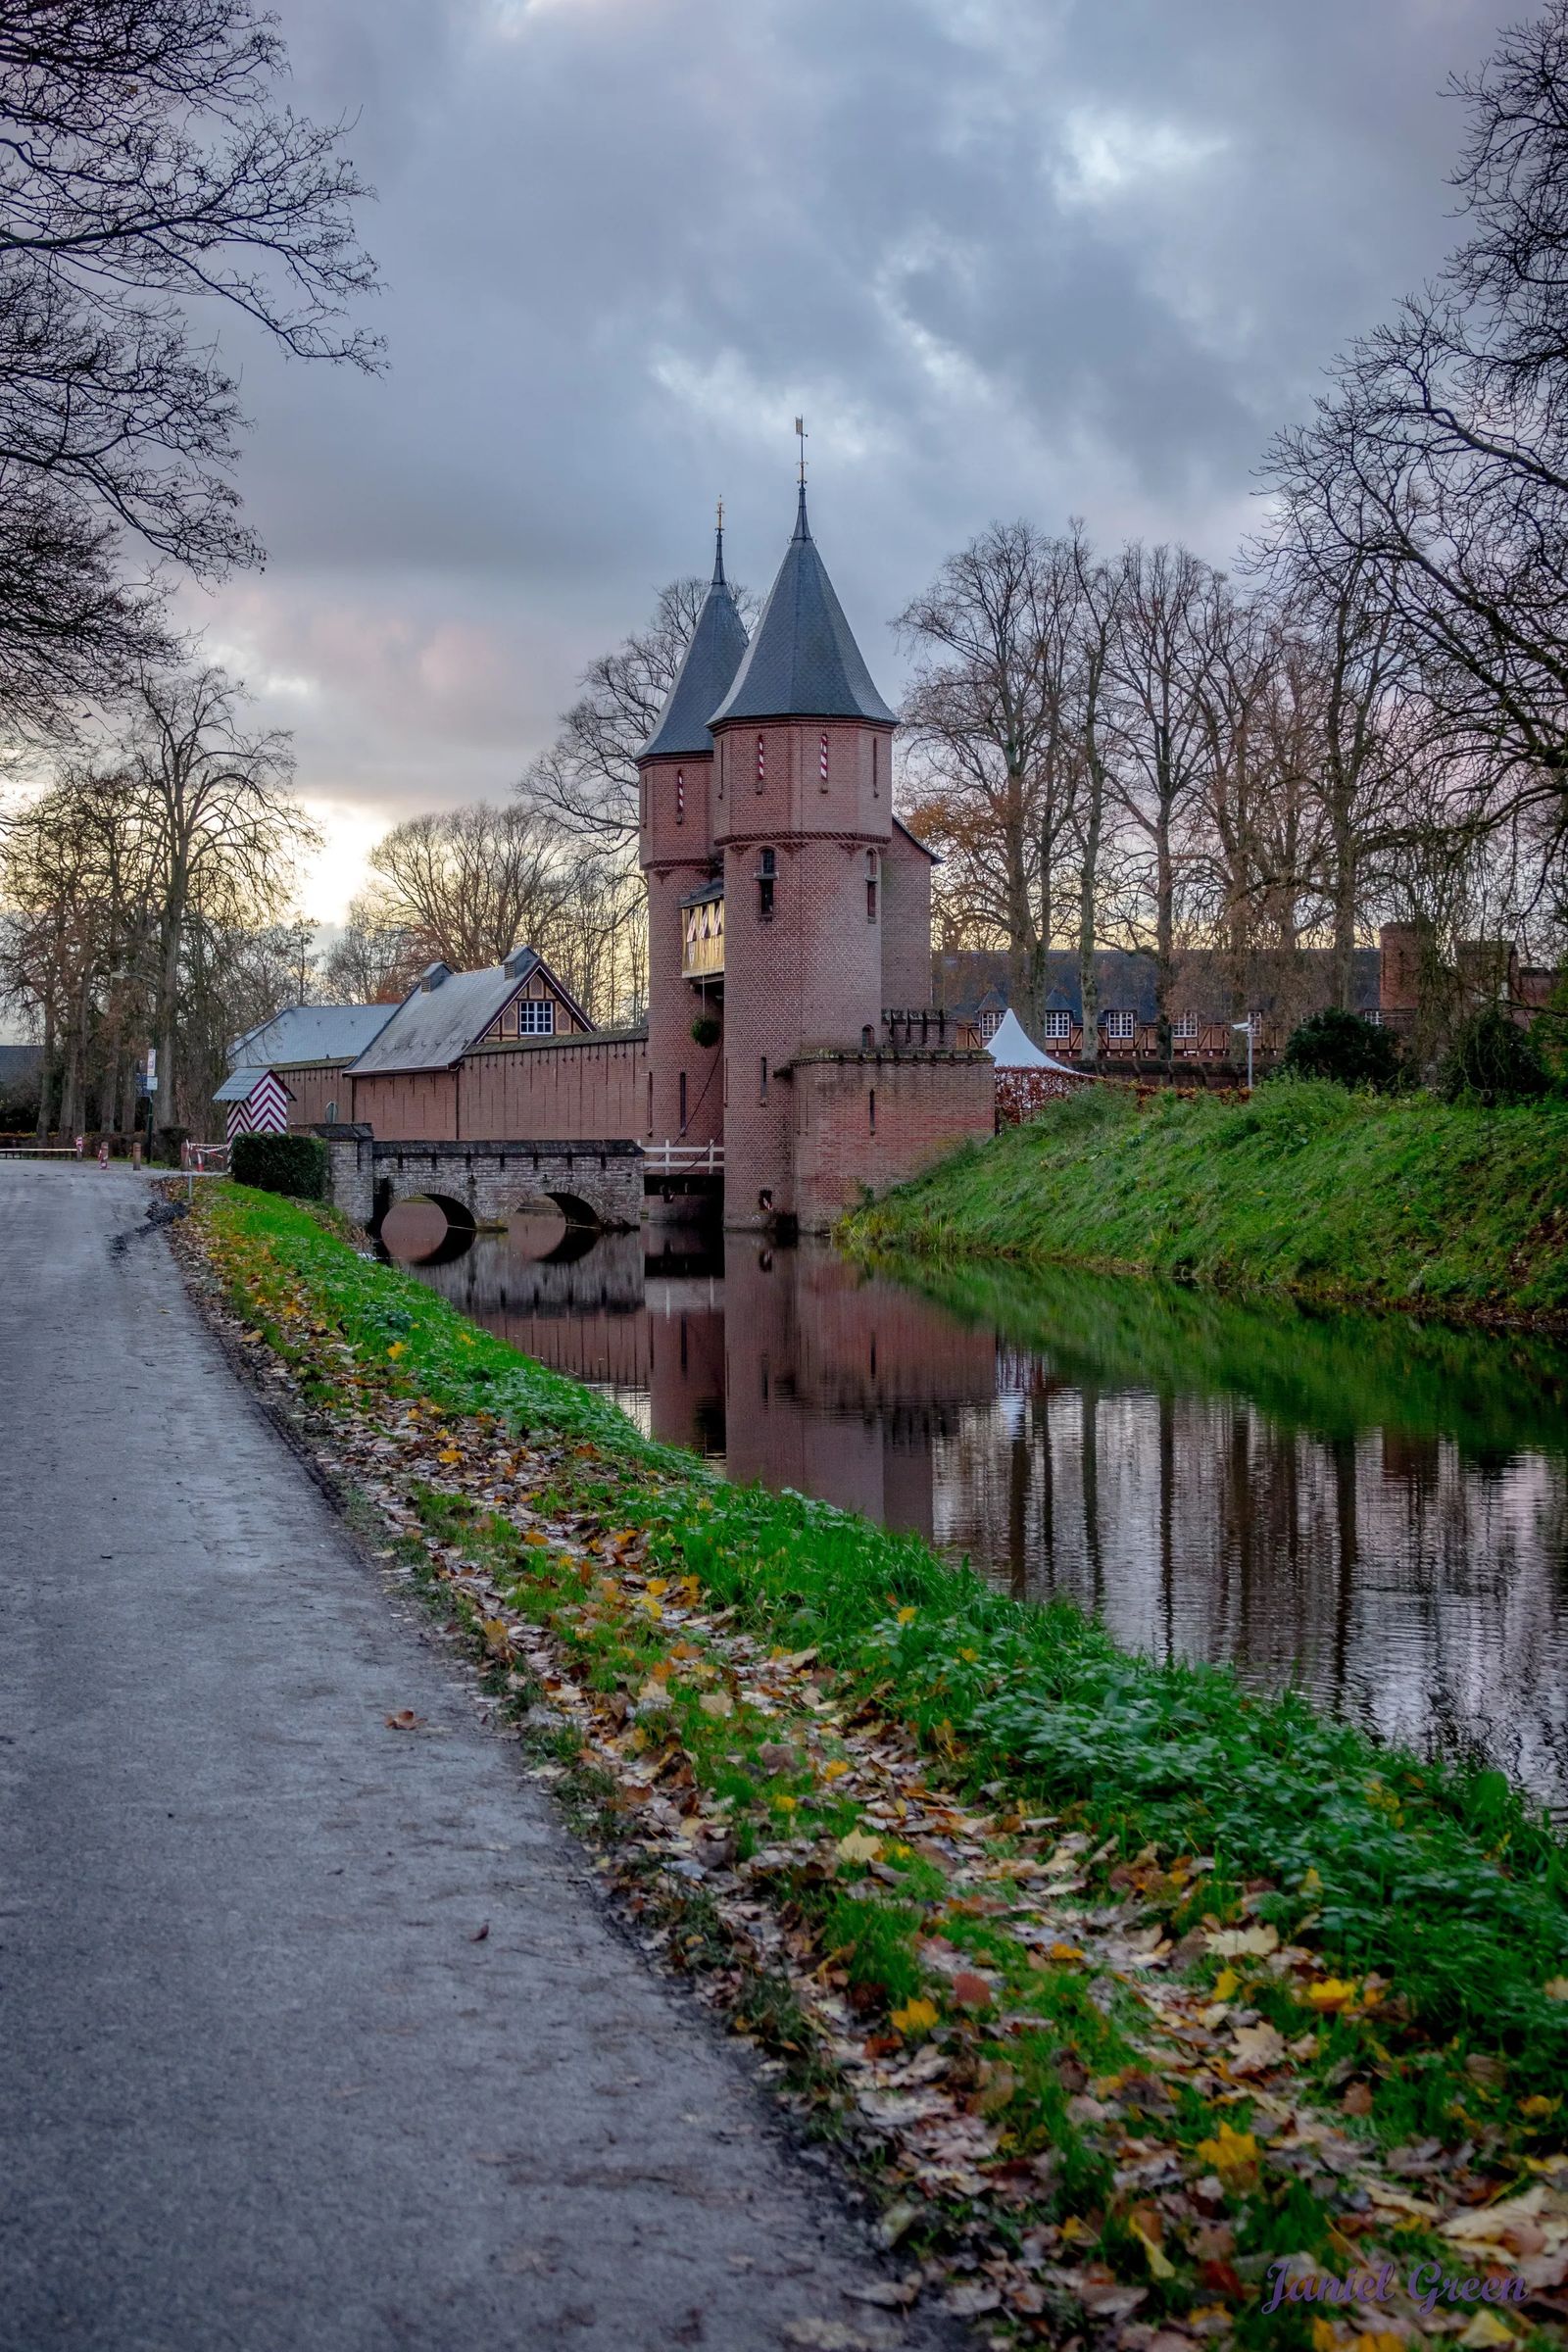 Castle De Haar in Utrecht Netherlands